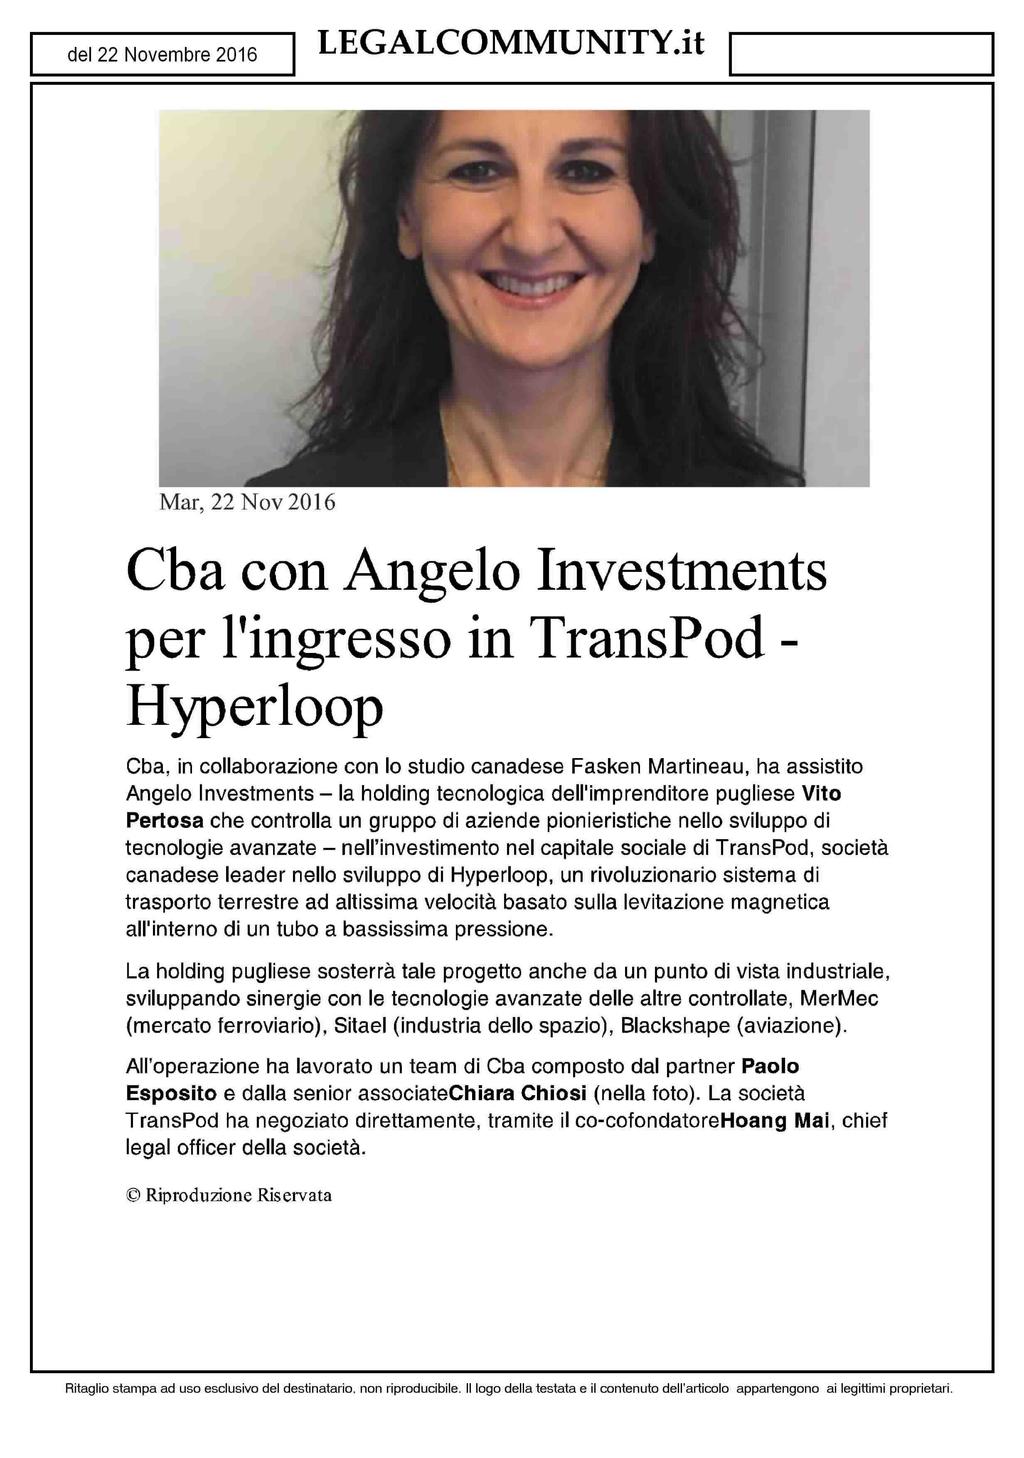 Mar, 22 Nov 2016 Cba con Angelo Investments per l'ingresso in TransPod - Hyperloop Cba, in collaborazione con lo studio canadese Fasken Martineau, ha assistito Angelo Investments - la holding